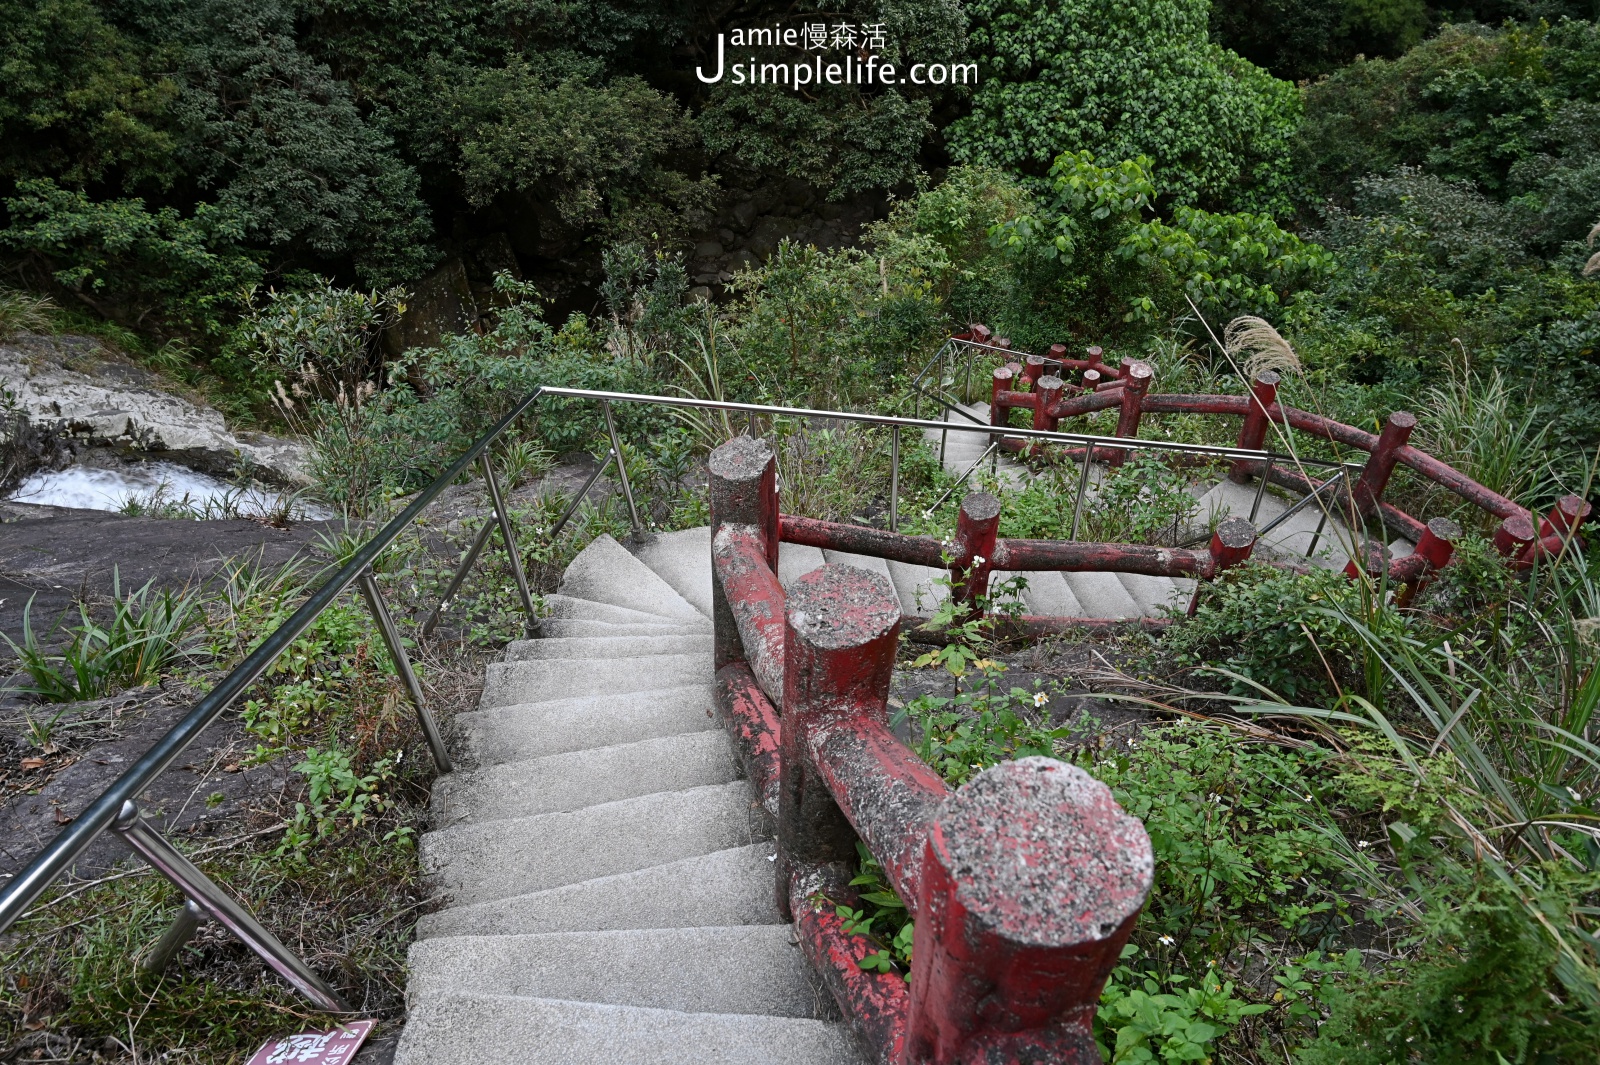 輕鬆欣賞「猴洞坑瀑布」美麗之景 猴洞坑瀑布170級石階梯